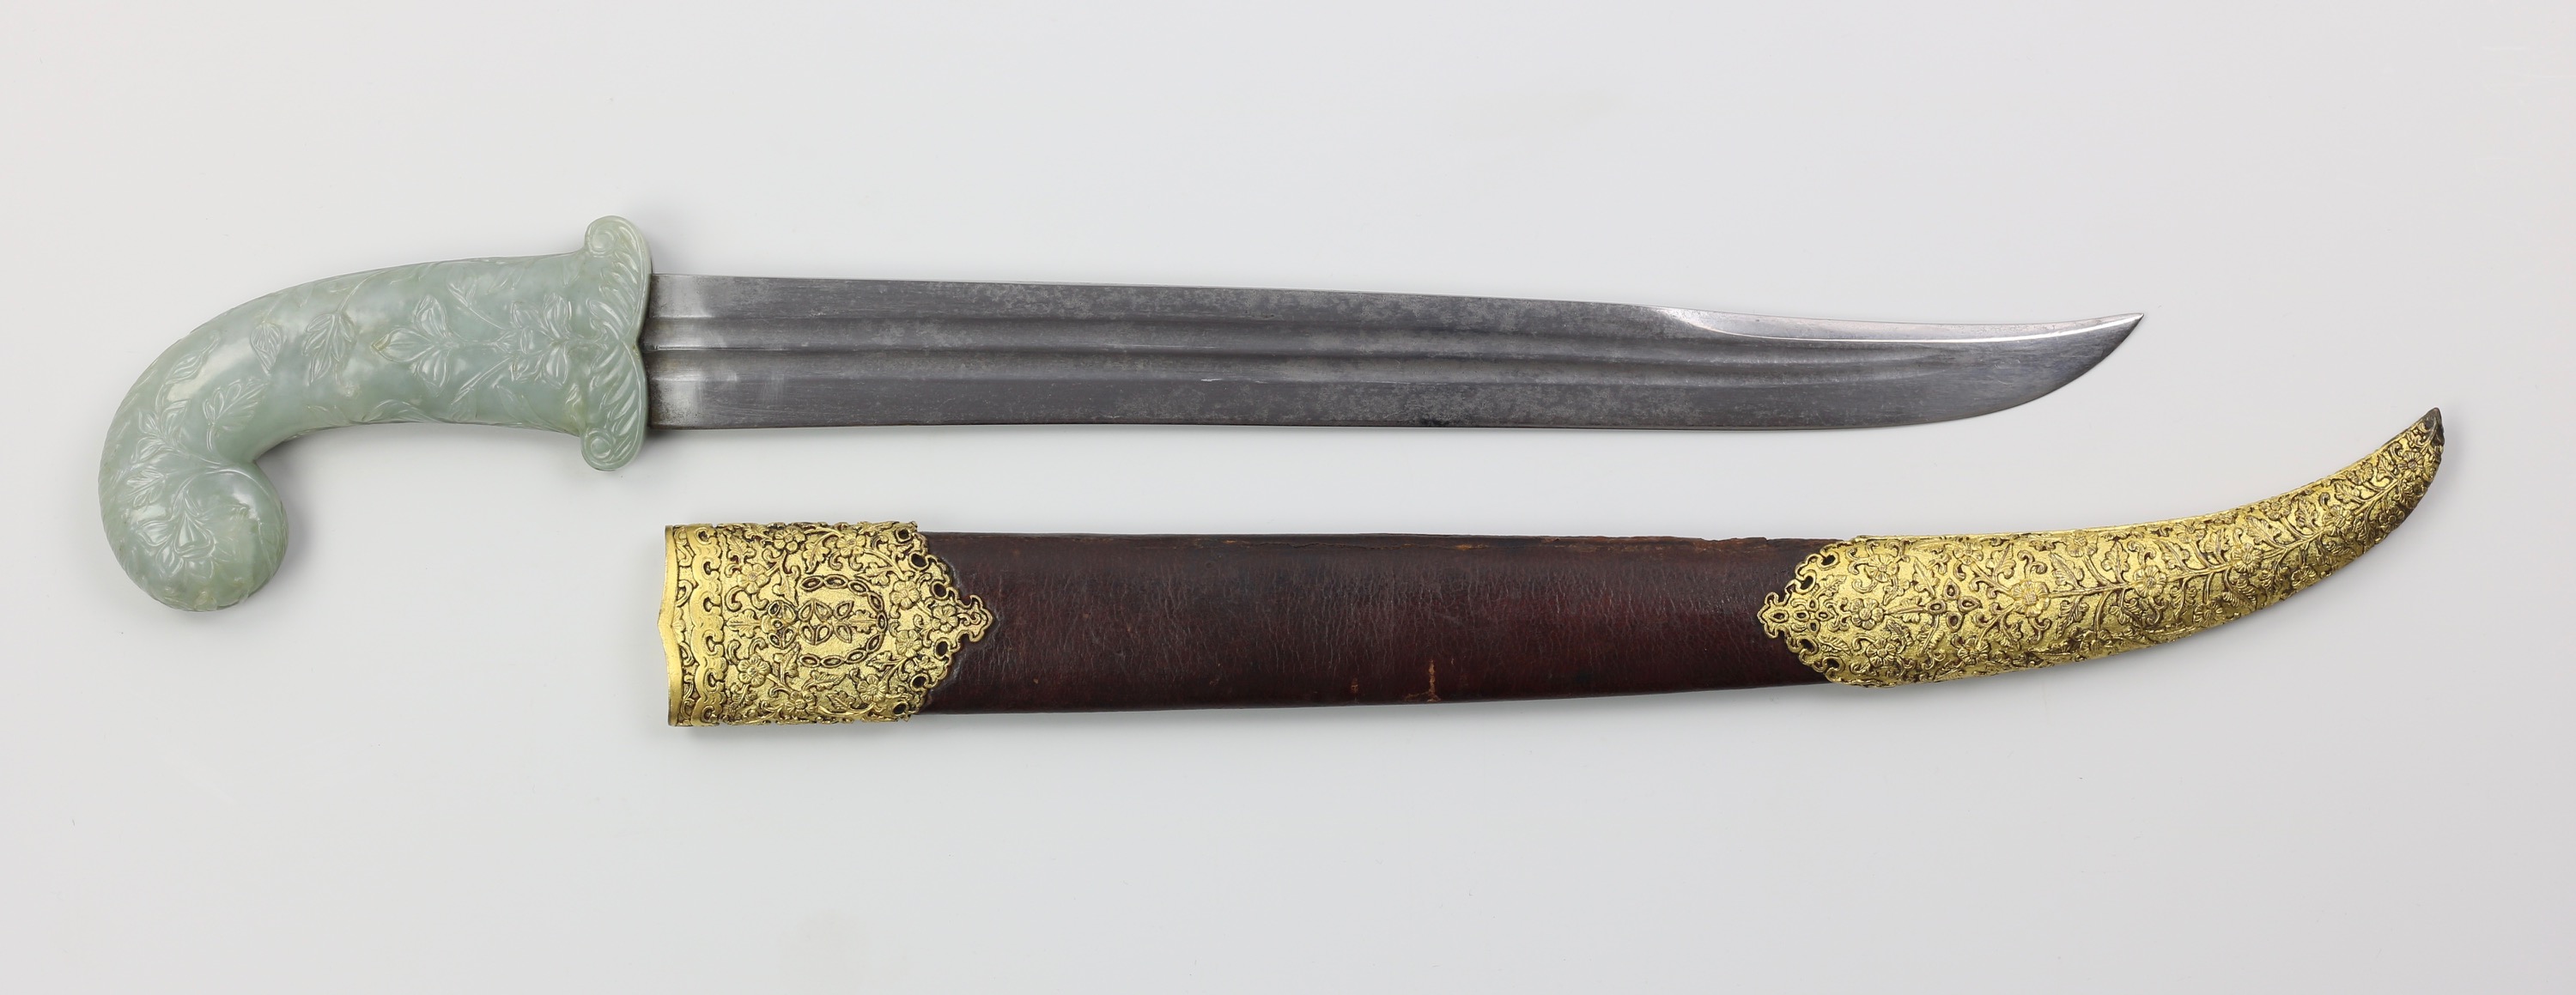 Qianlong dagger